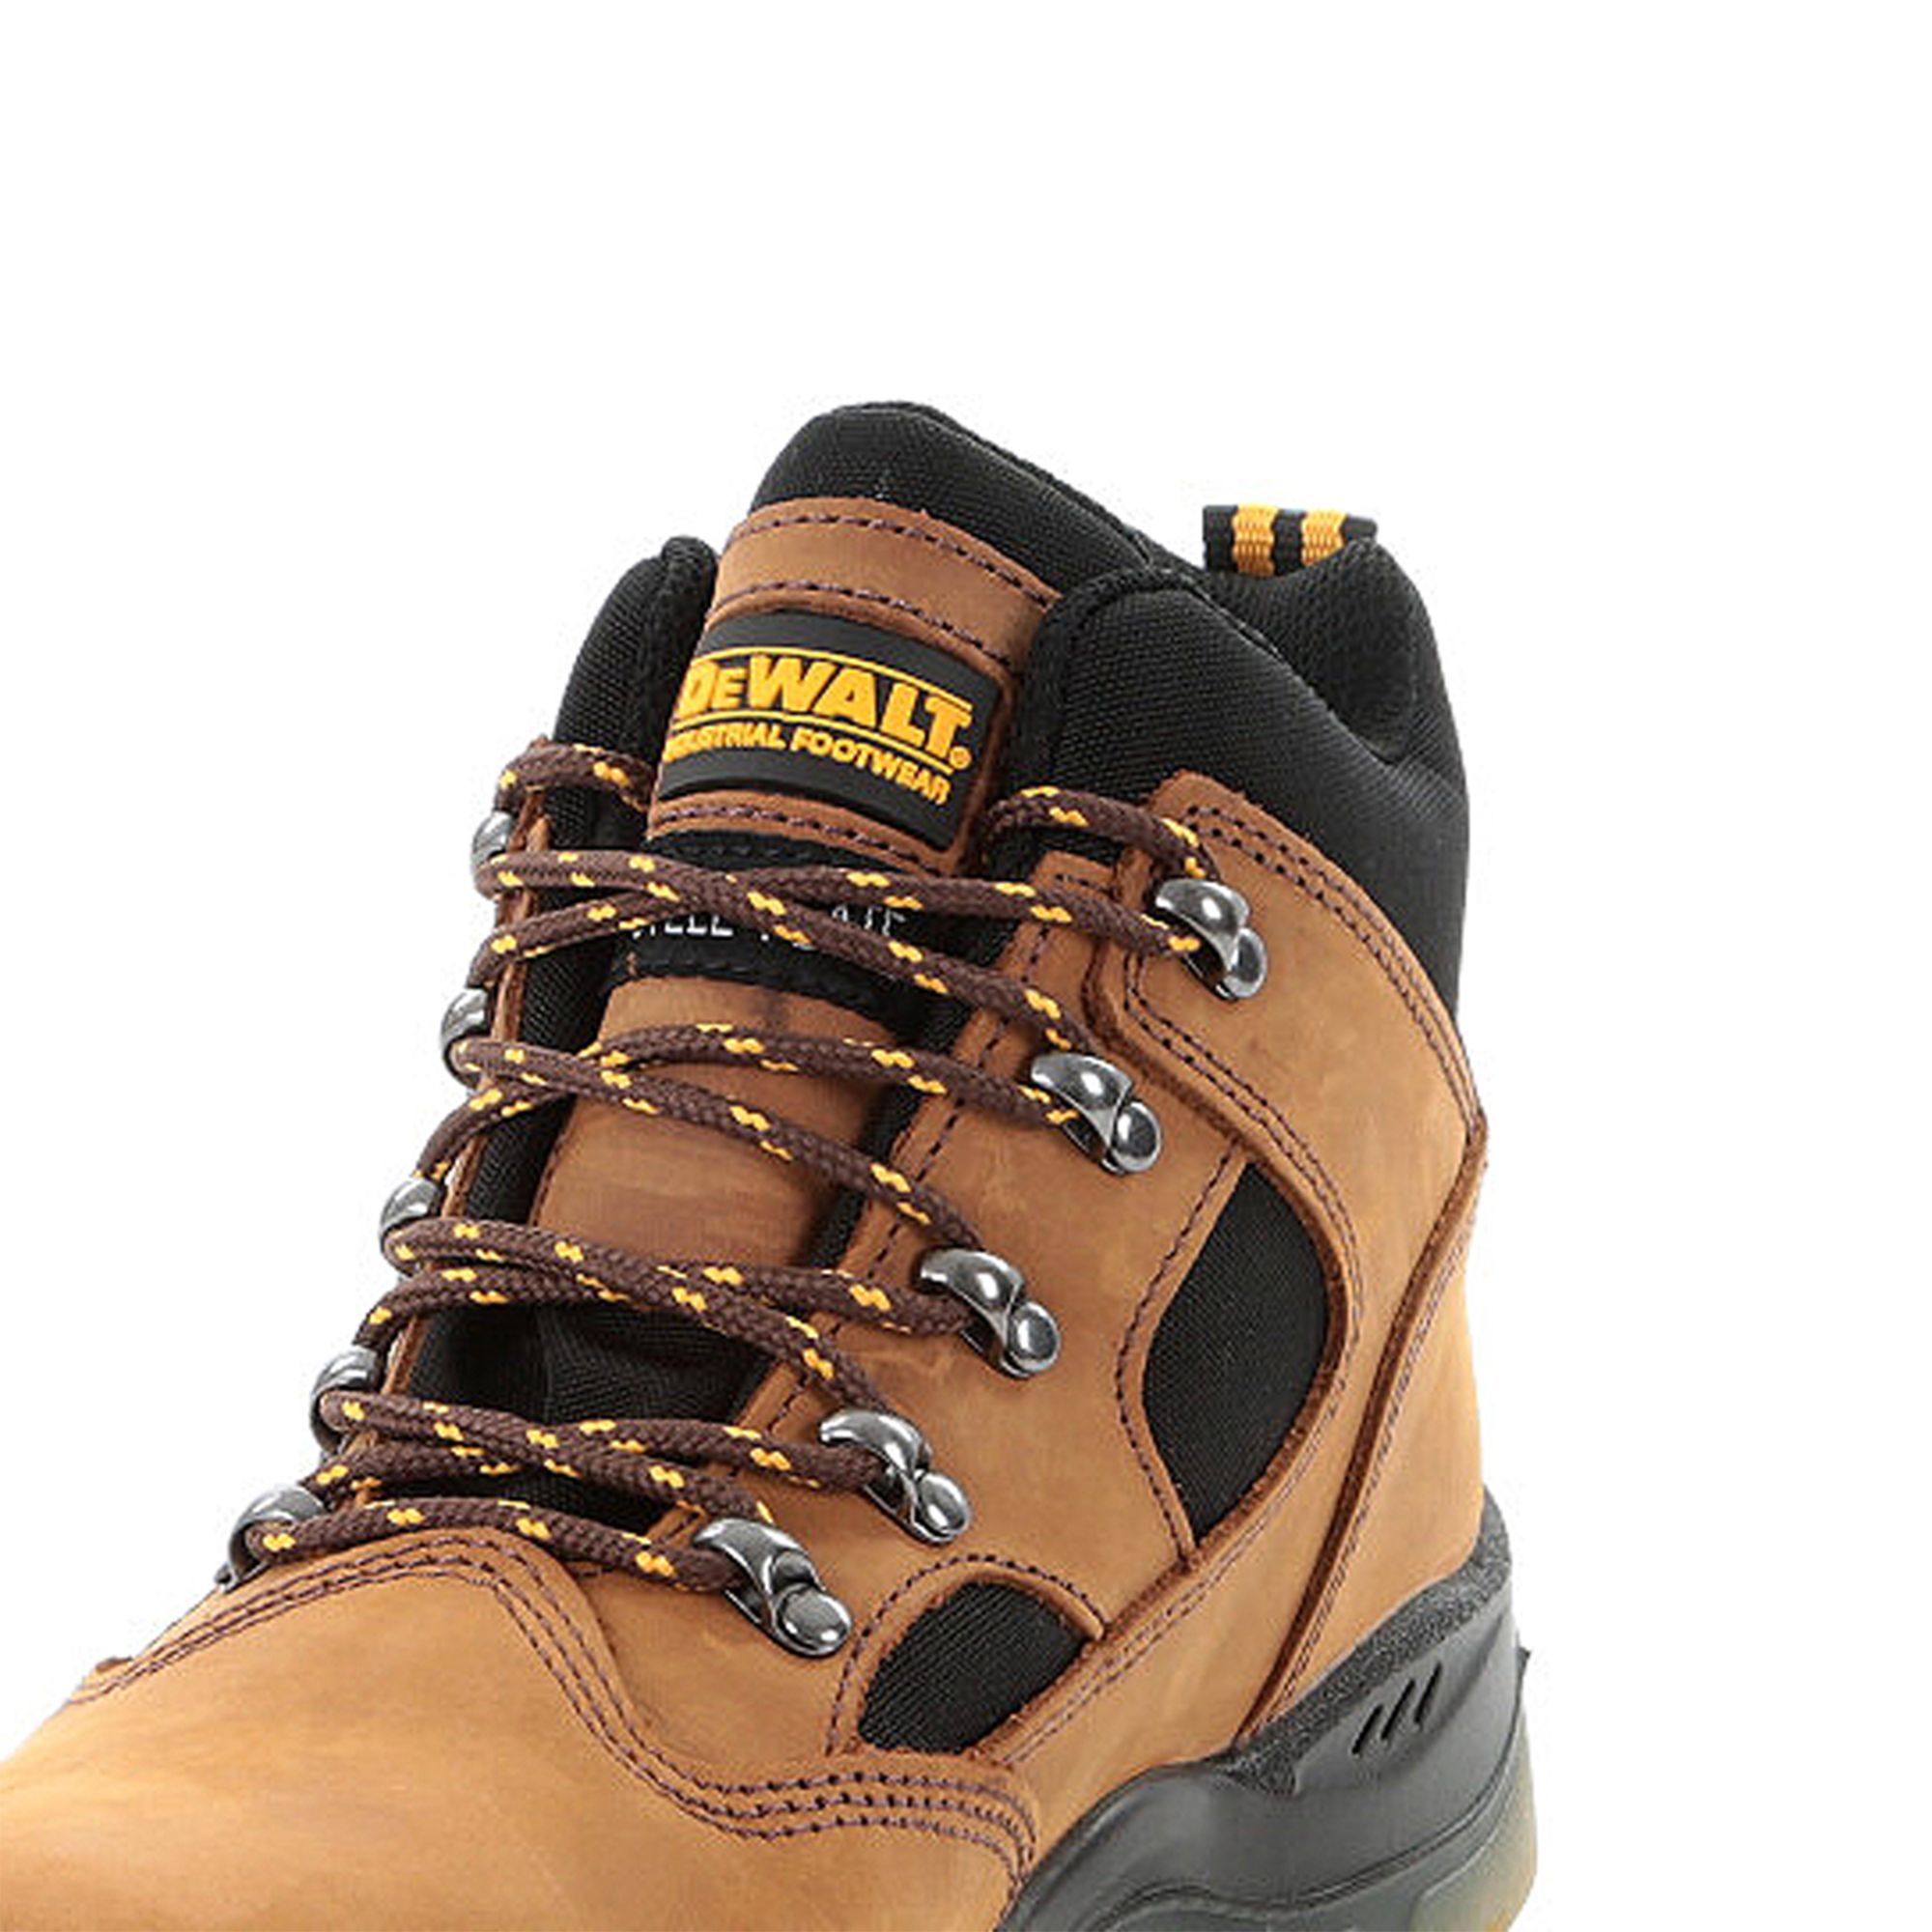 DeWalt Challenger Men's Brown Safety boots, Size 10